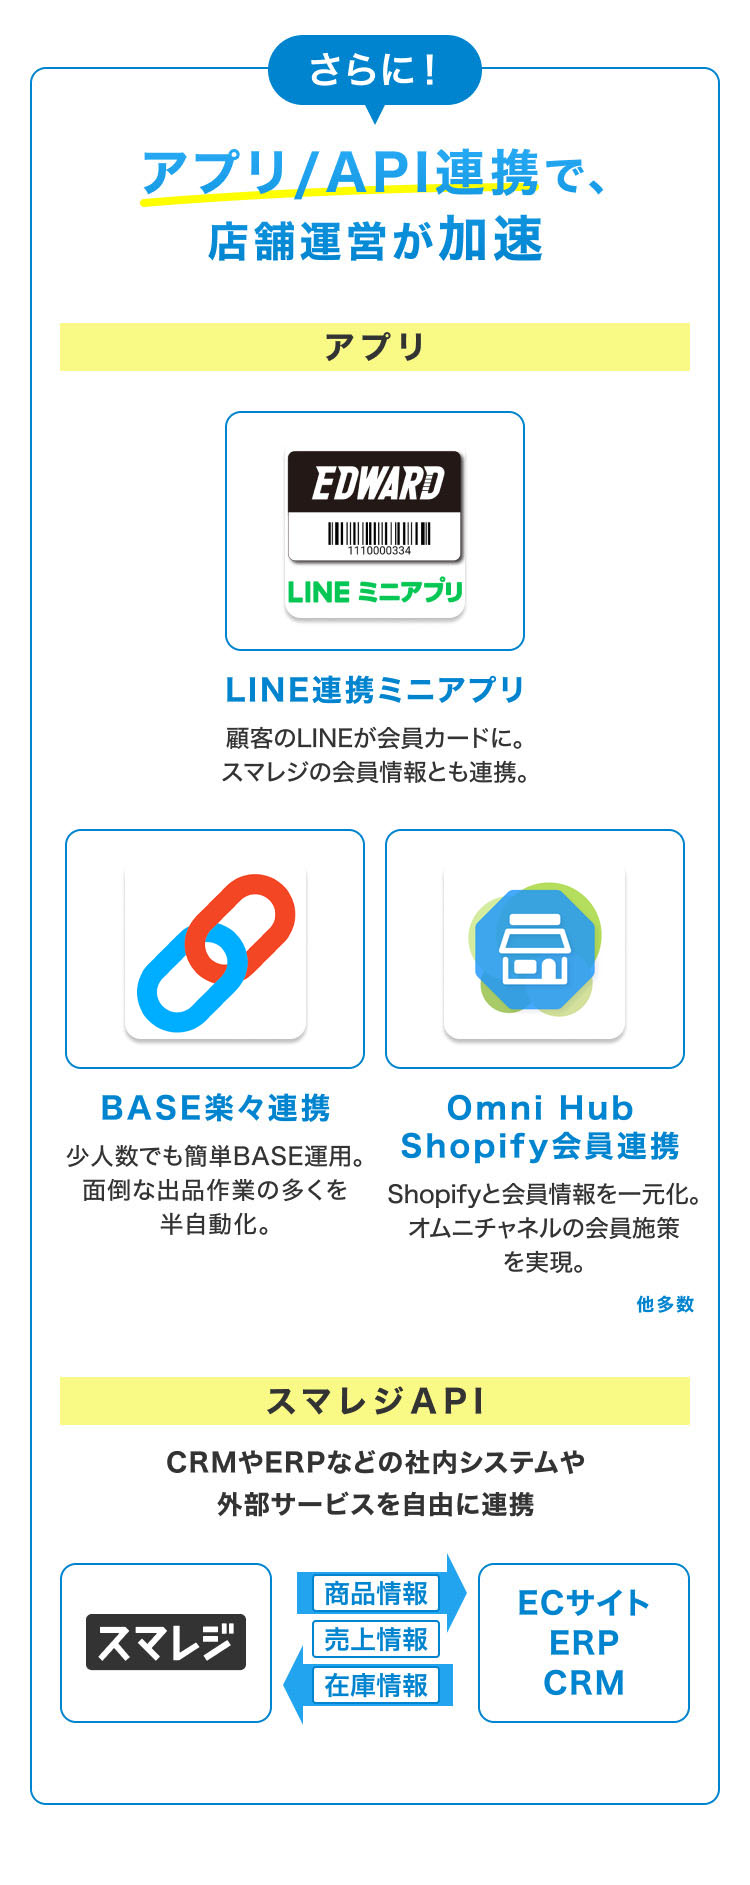 さらに アプリAPI連携で、店舗運営が加速 アプリ LINE連携ミニアプリ 顧客のLINEが会員カードに。スマレジの会員情報とも連携。 BASE楽々連携 少人数でも簡単BASE運用。面倒な出品作業の多くを半自動化。 OmniHubShopify会員連携 Shopifyと会員情報を一元化。オムニチャネルの会員施策を実現。他多数  スマレジAPI CRMやERPなどの社内システムや外部サービスを自由に連携